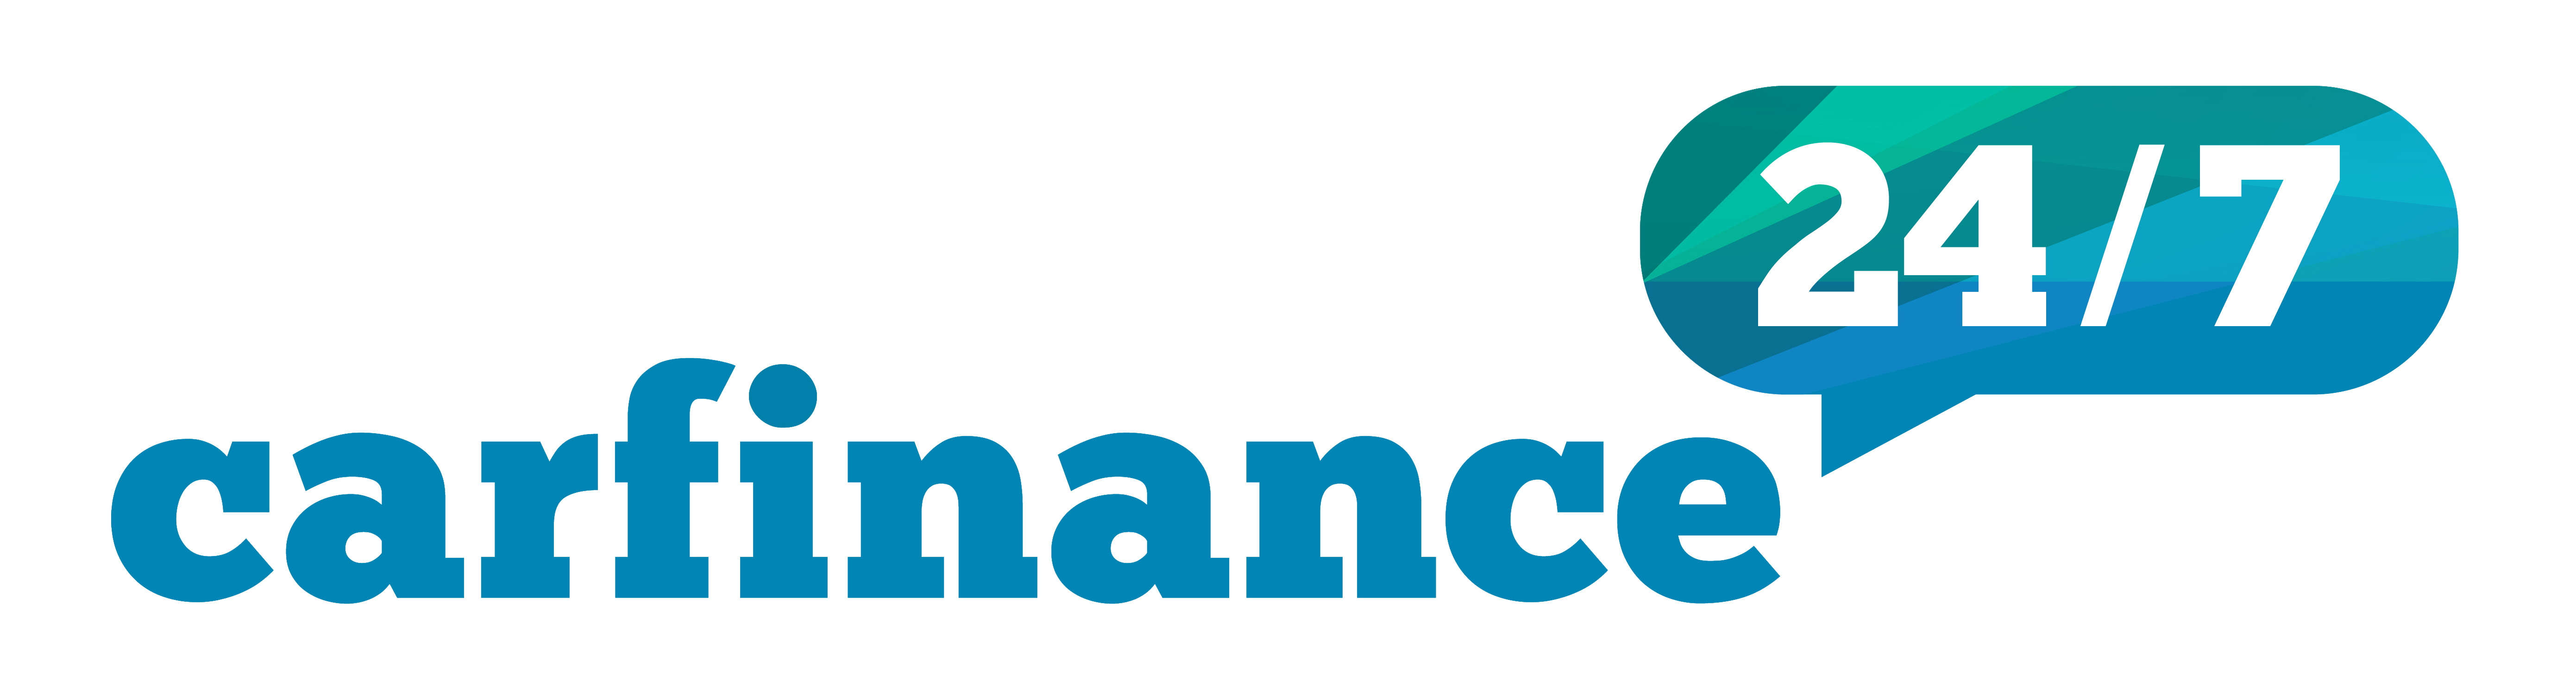 Car Finance 247 Logo